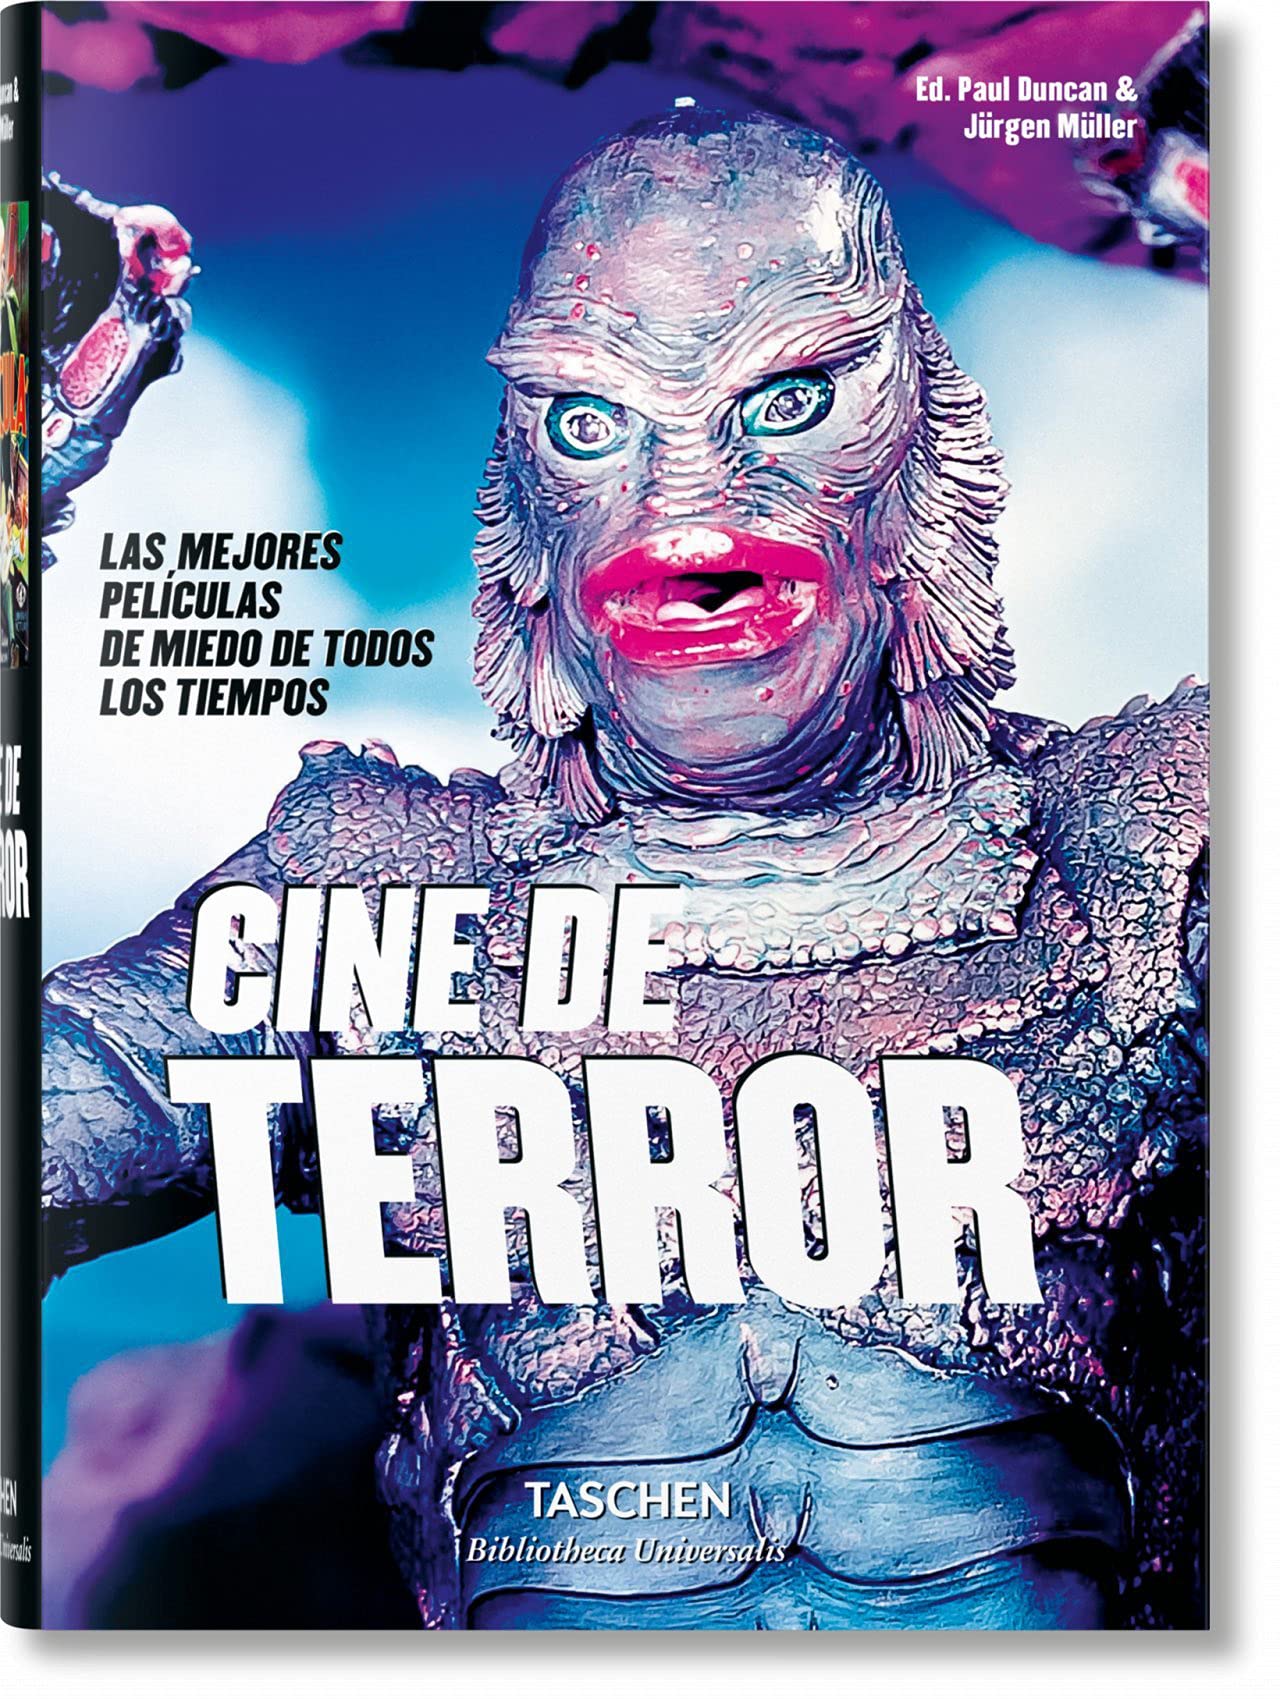 Libri Paul Duncan / Jurgen Muller - Cine De Terror (Spanish Edition) NUOVO SIGILLATO, EDIZIONE DEL 30/09/2022 SUBITO DISPONIBILE